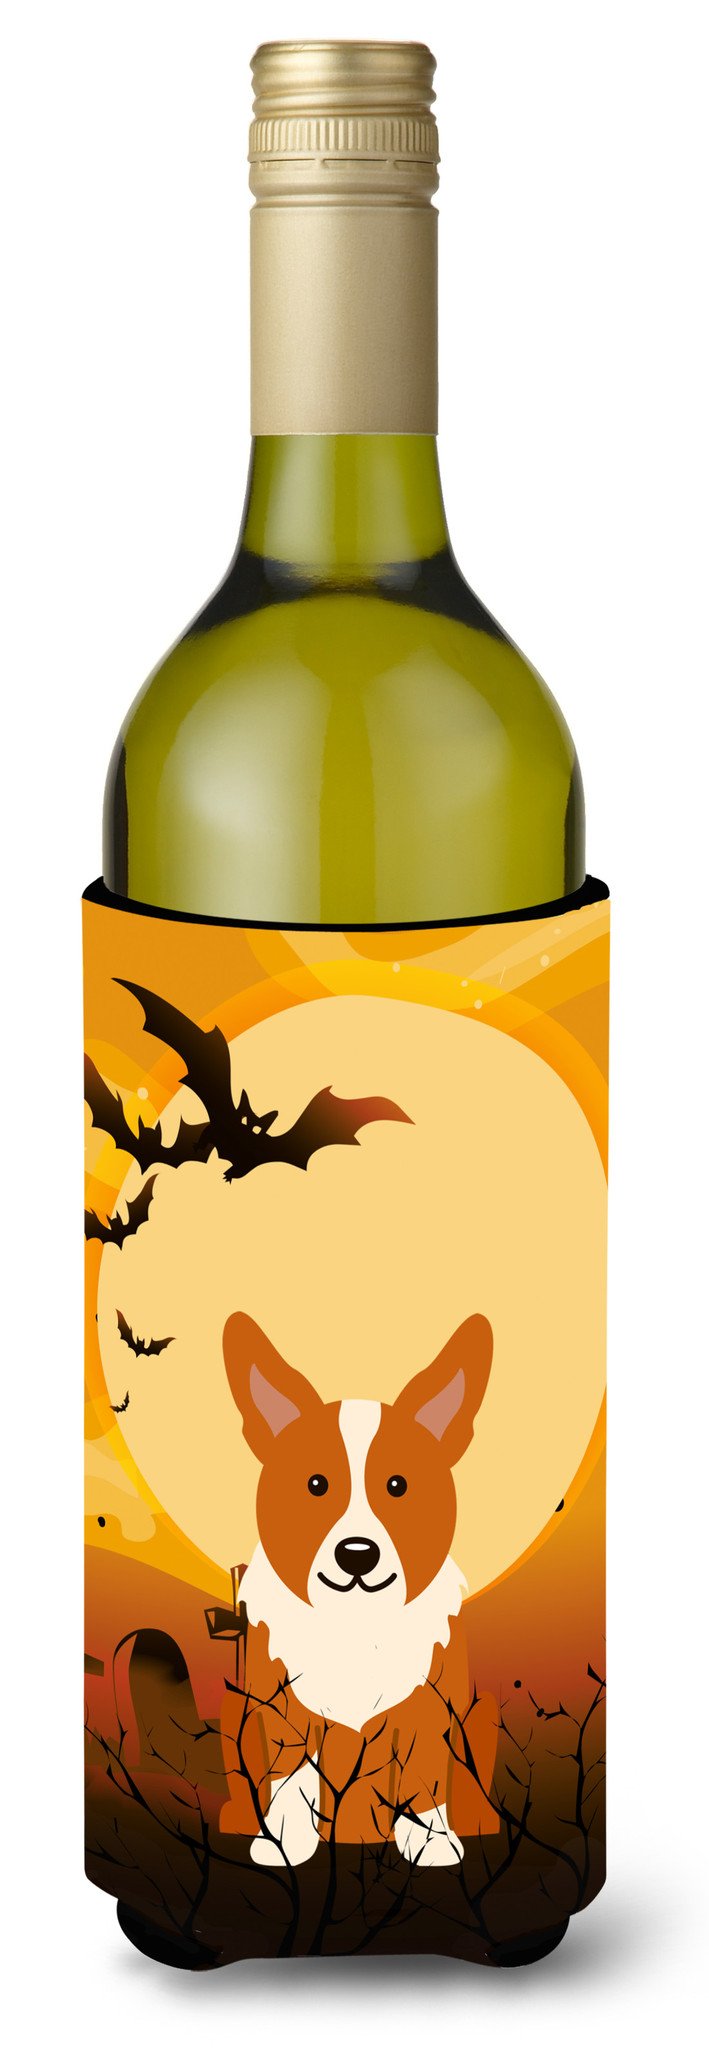 Halloween Corgi Wine Bottle Beverge Insulator Hugger BB4366LITERK by Caroline's Treasures